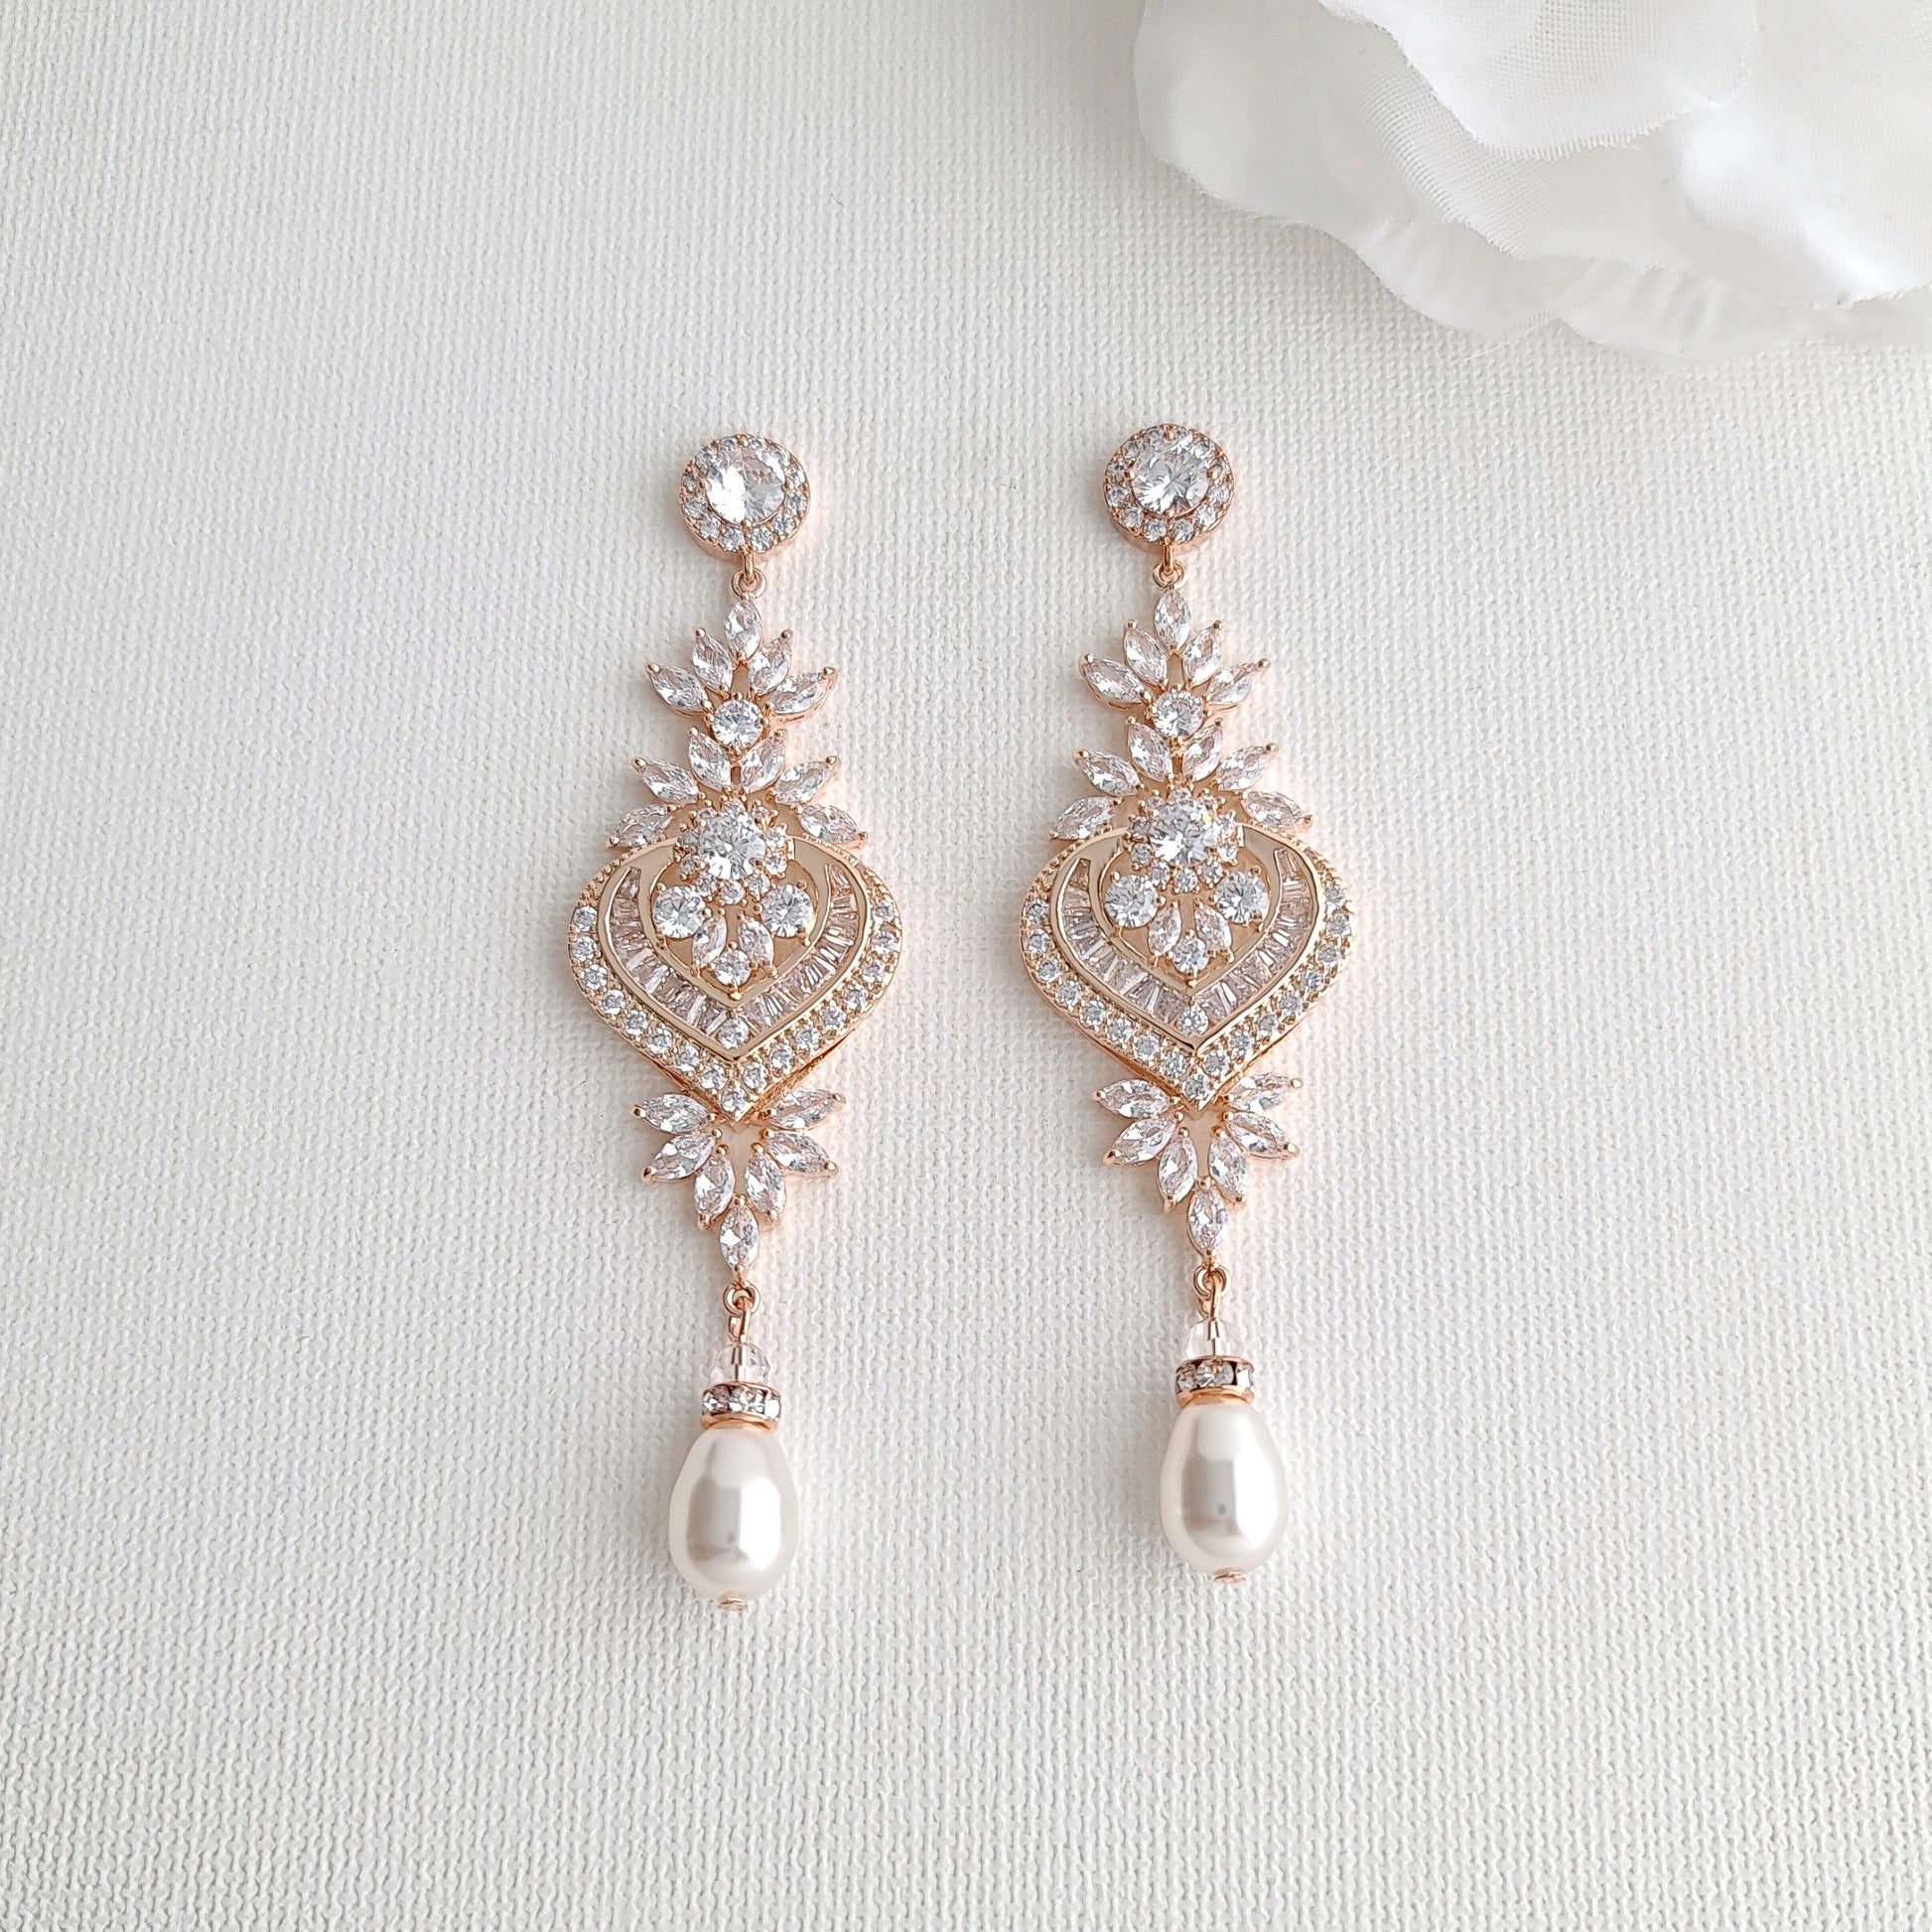 Rose Gold Chandelier Earrings Long Earrings for Weddings with Crystal & Pearl Drops- Poetry Designs